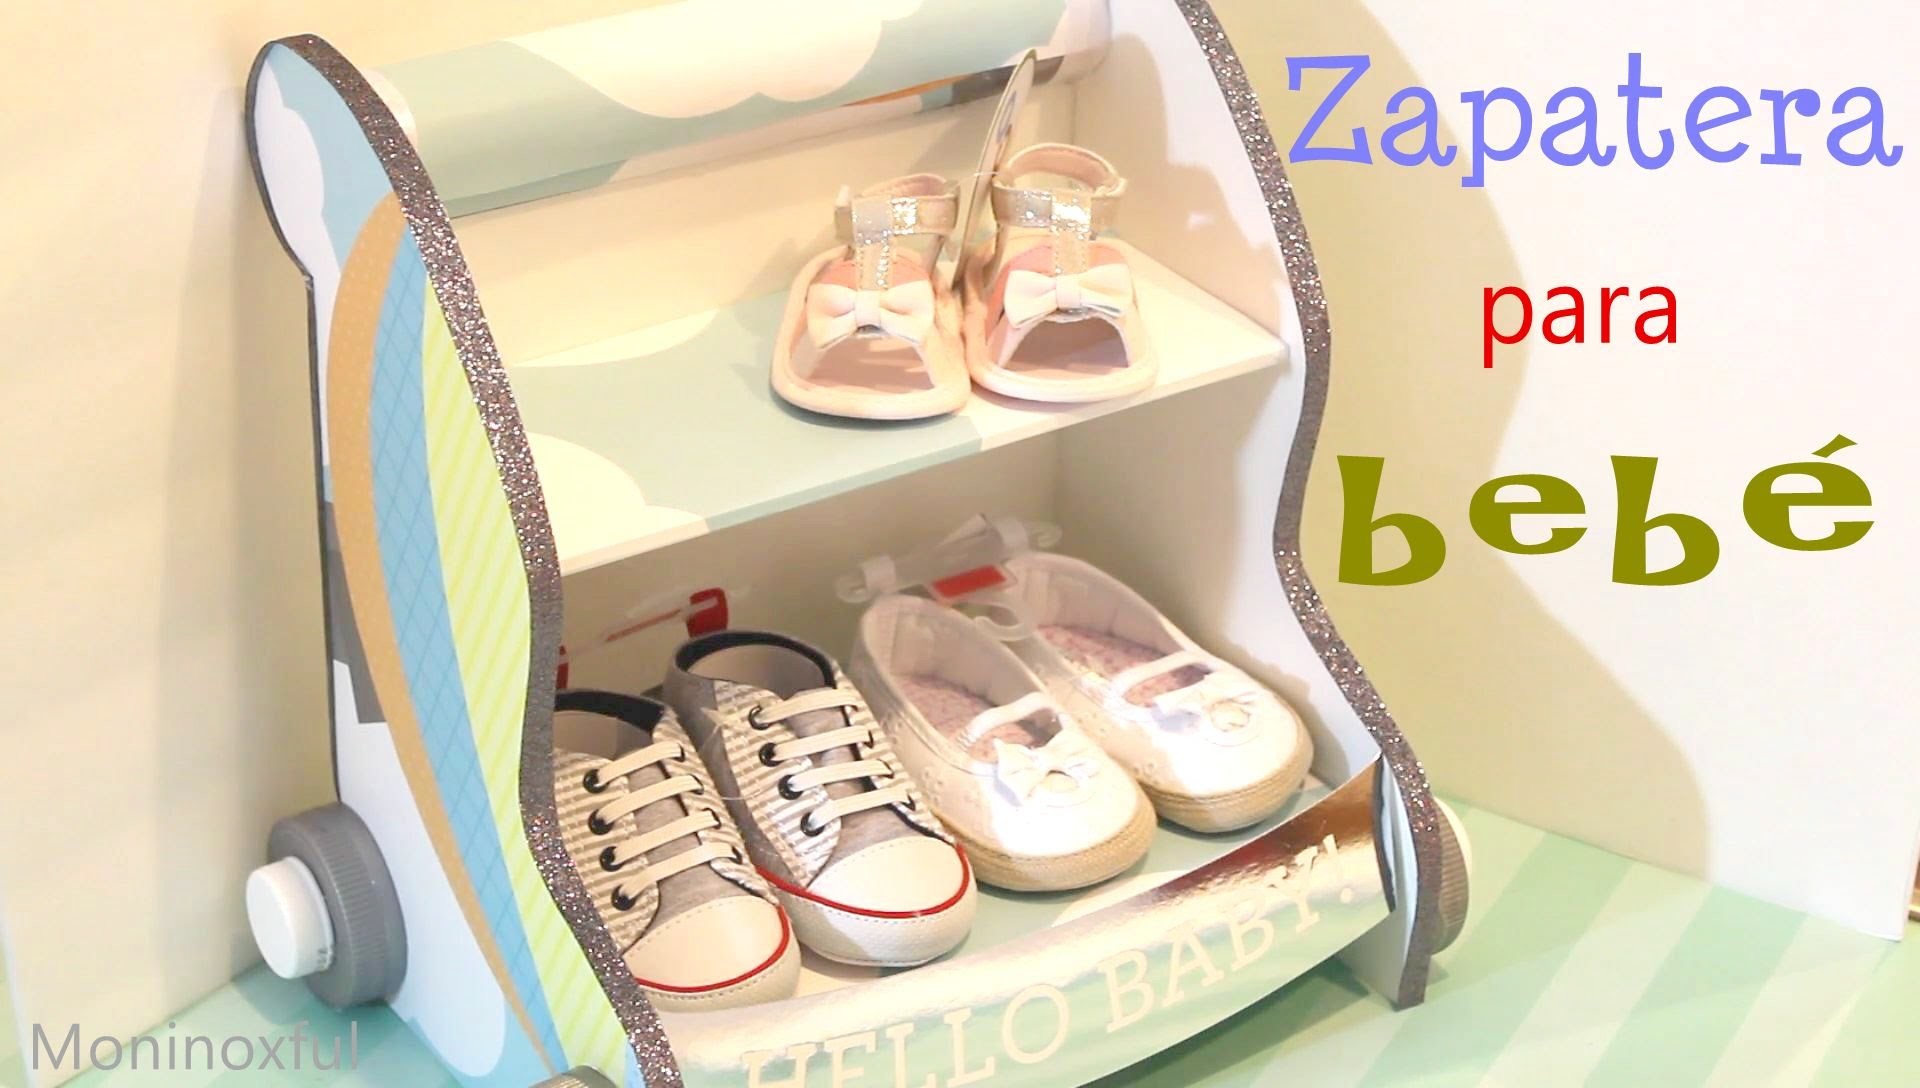 Cómo hacer una Zapatera para bebé en forma de carrito